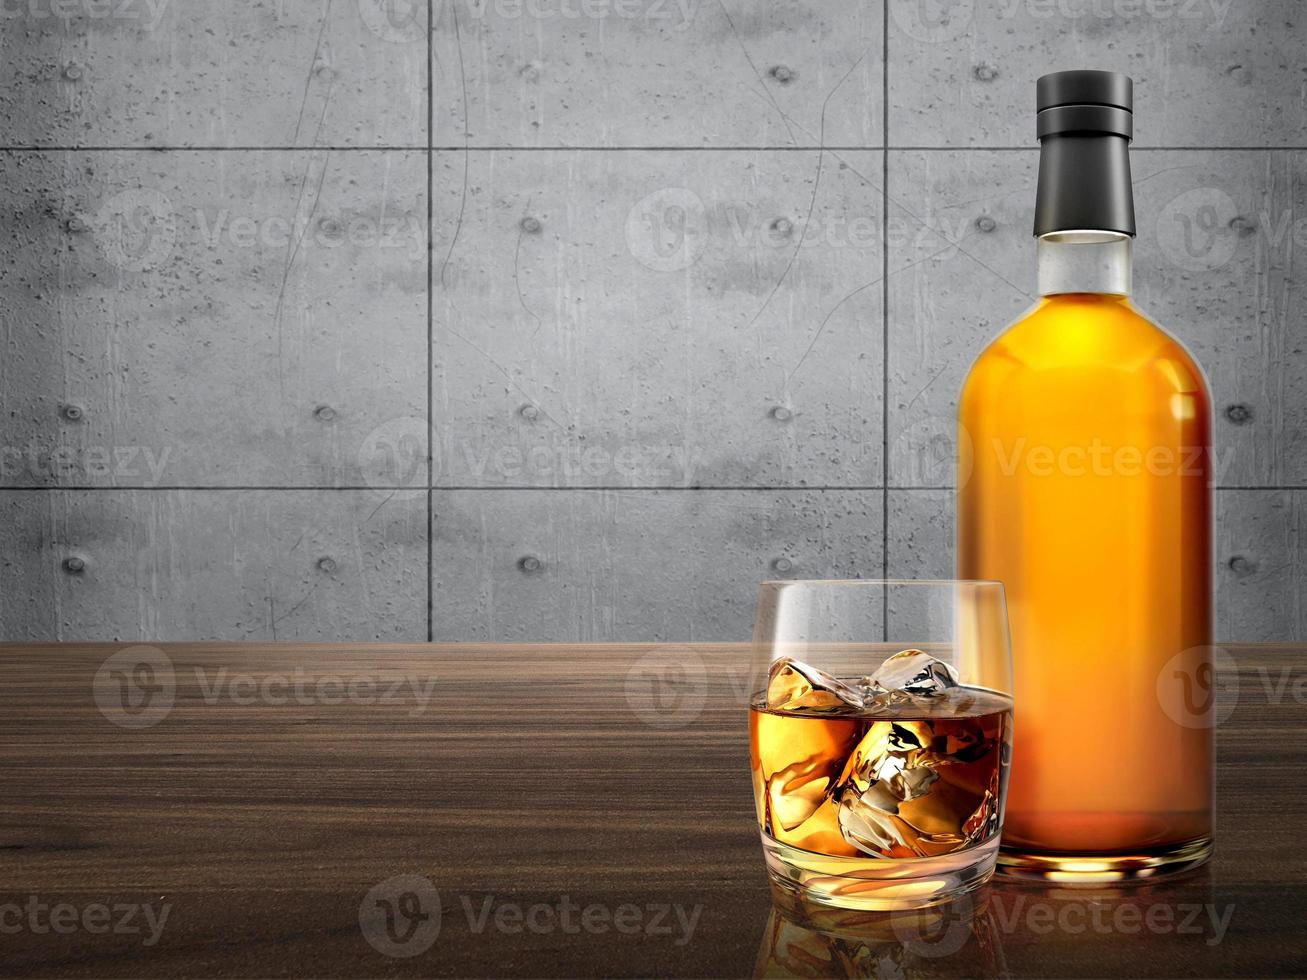 bouteille de whisky avec verre sur comptoir en bois. fond de ciment photo